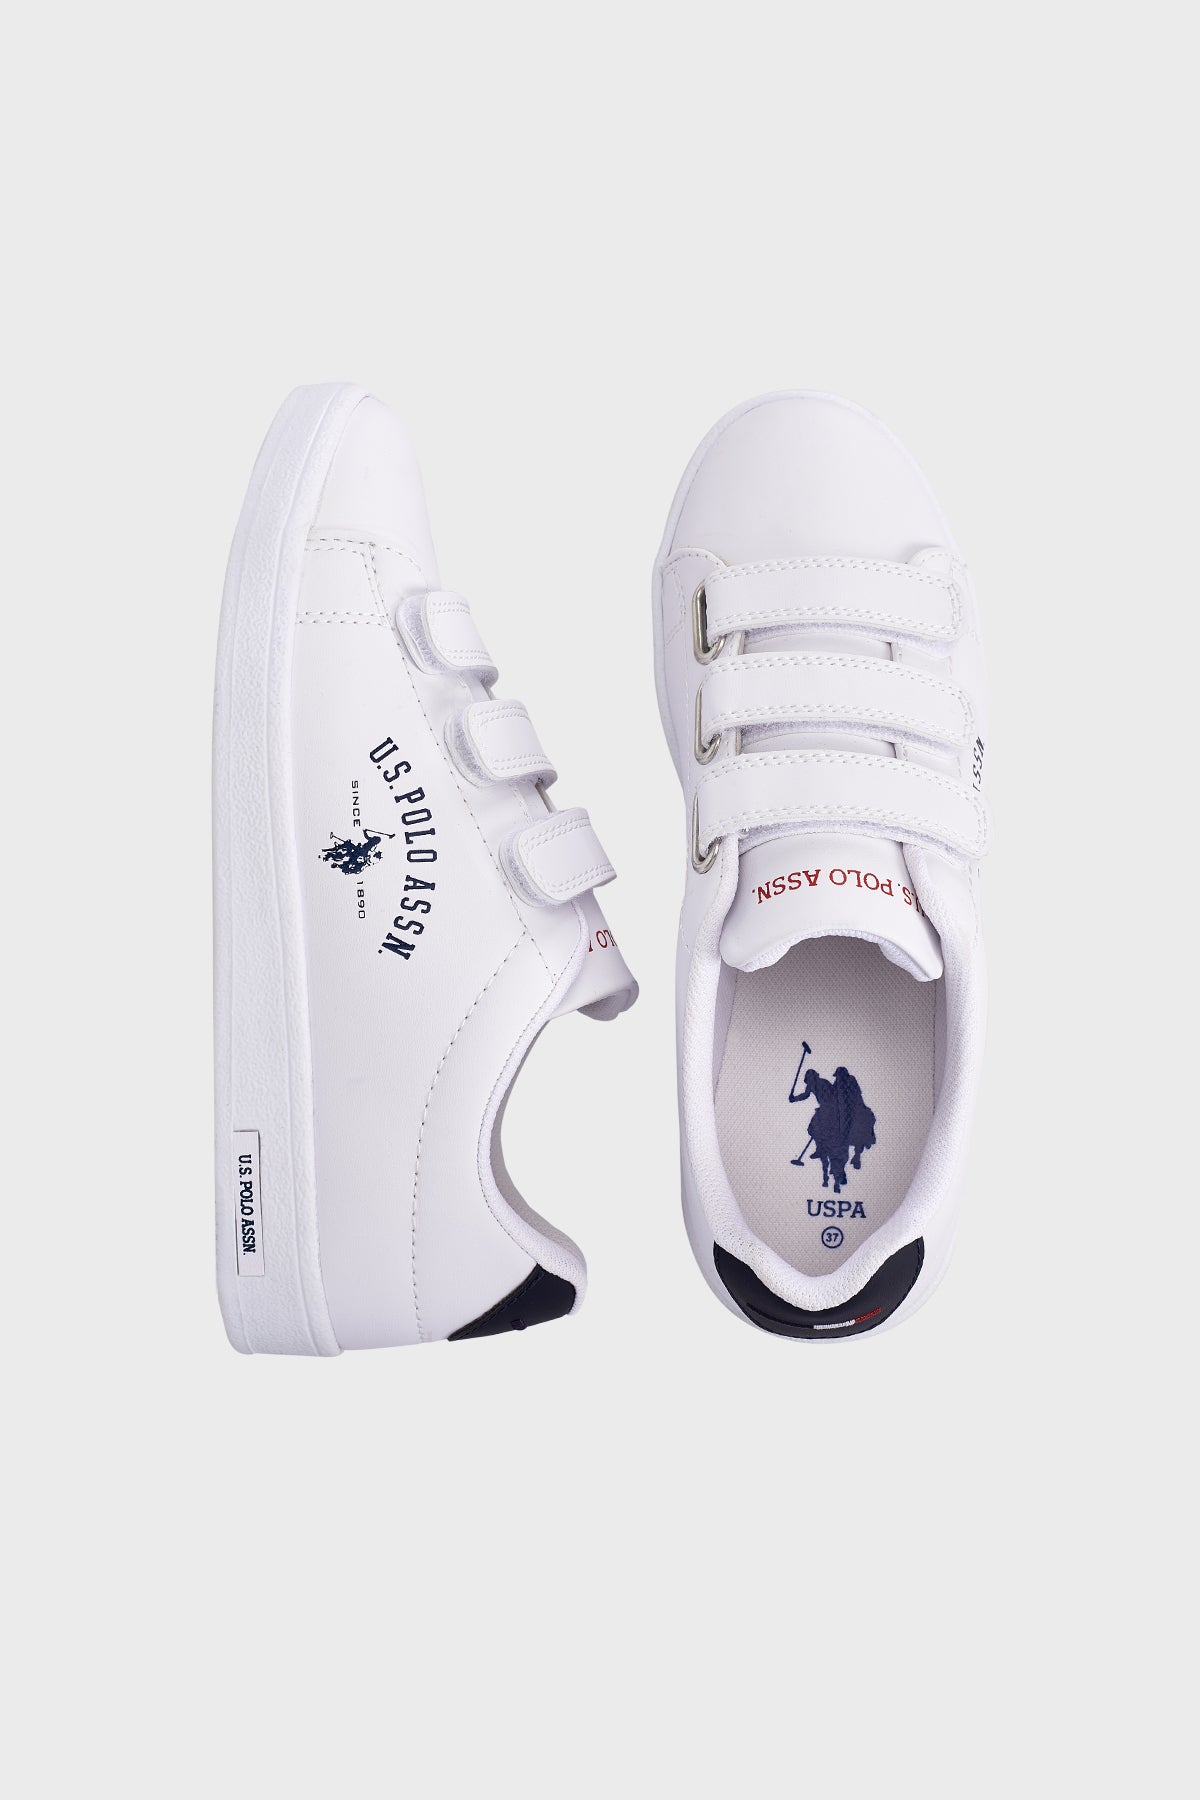 U.S. Polo Assn Cırtlı Sneaker Bayan Ayakkabı SINGER 2PR BEYAZ